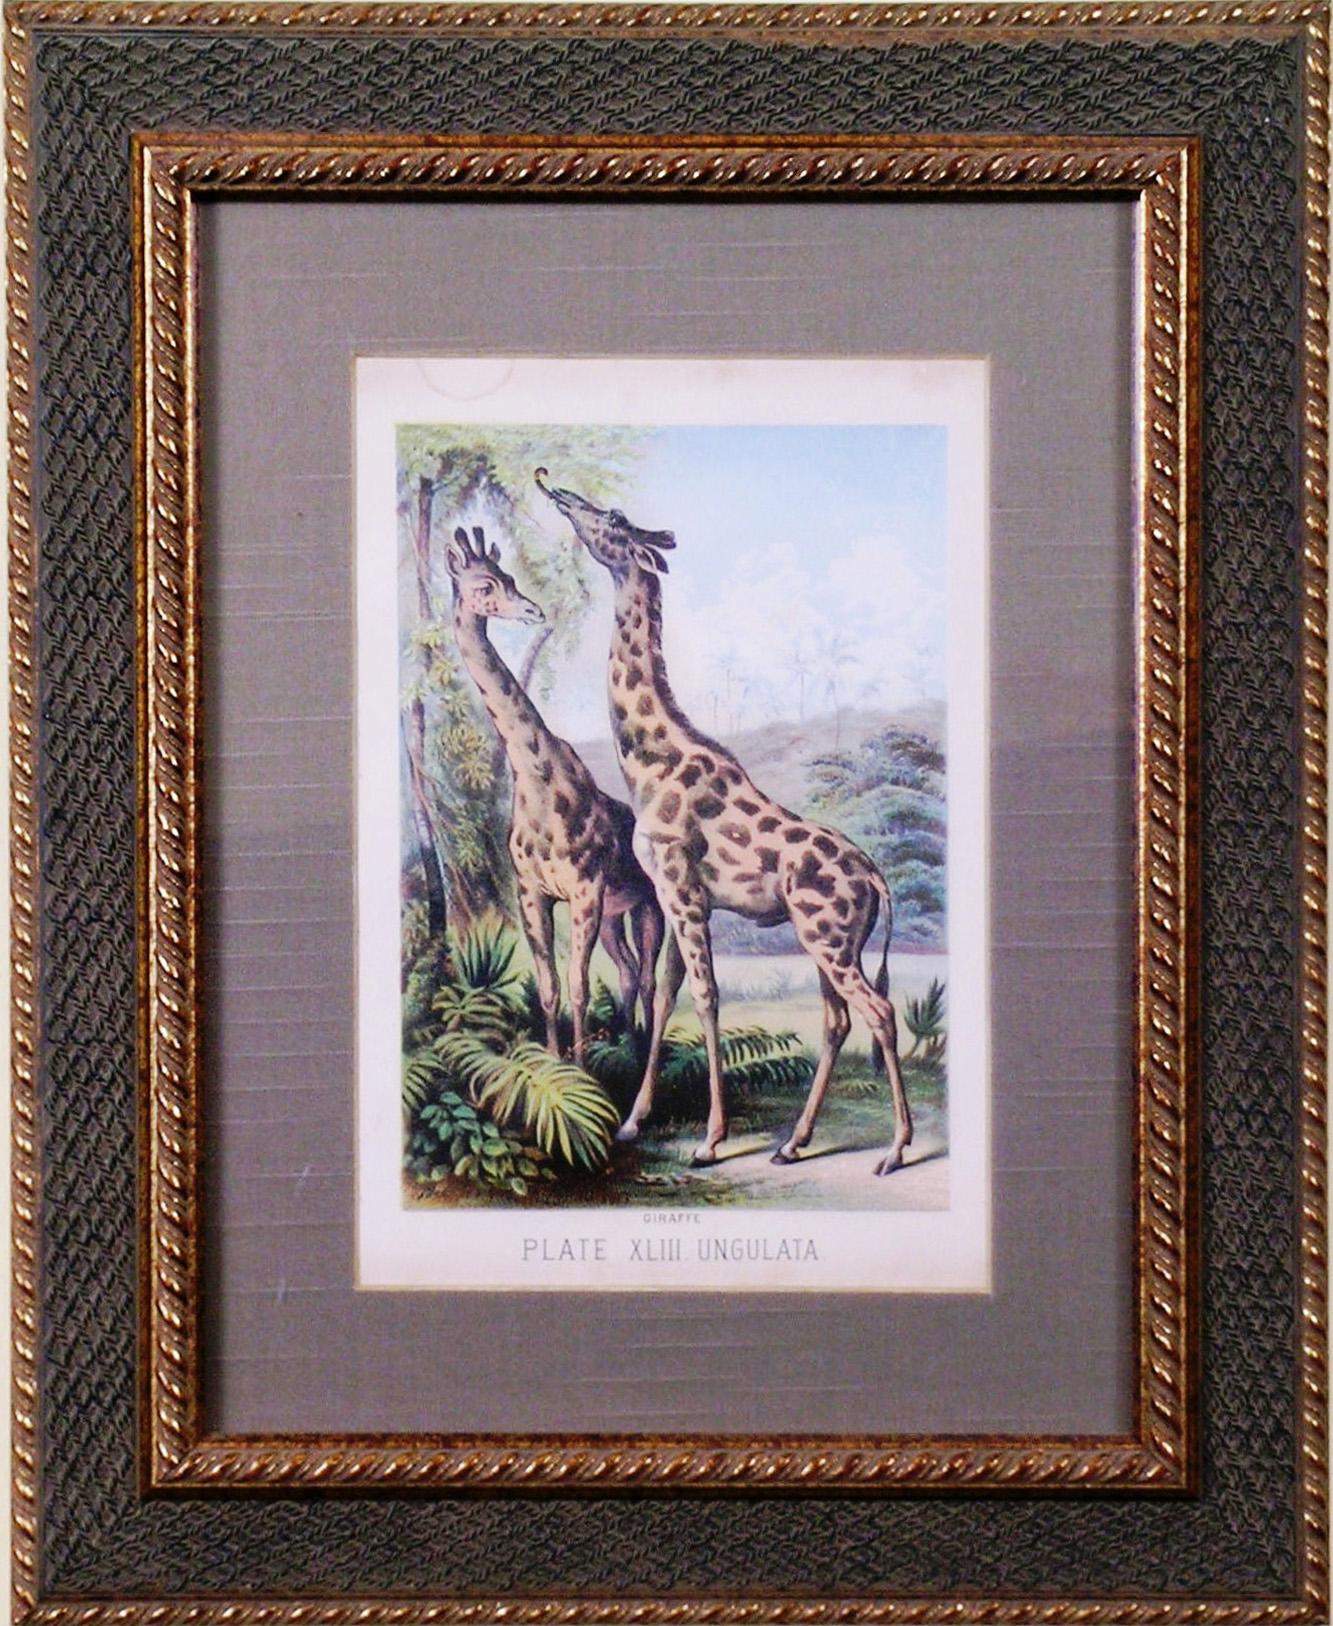 Assiette XLIII Ungulata (Giraffes) - Print de Henry J. Johnson